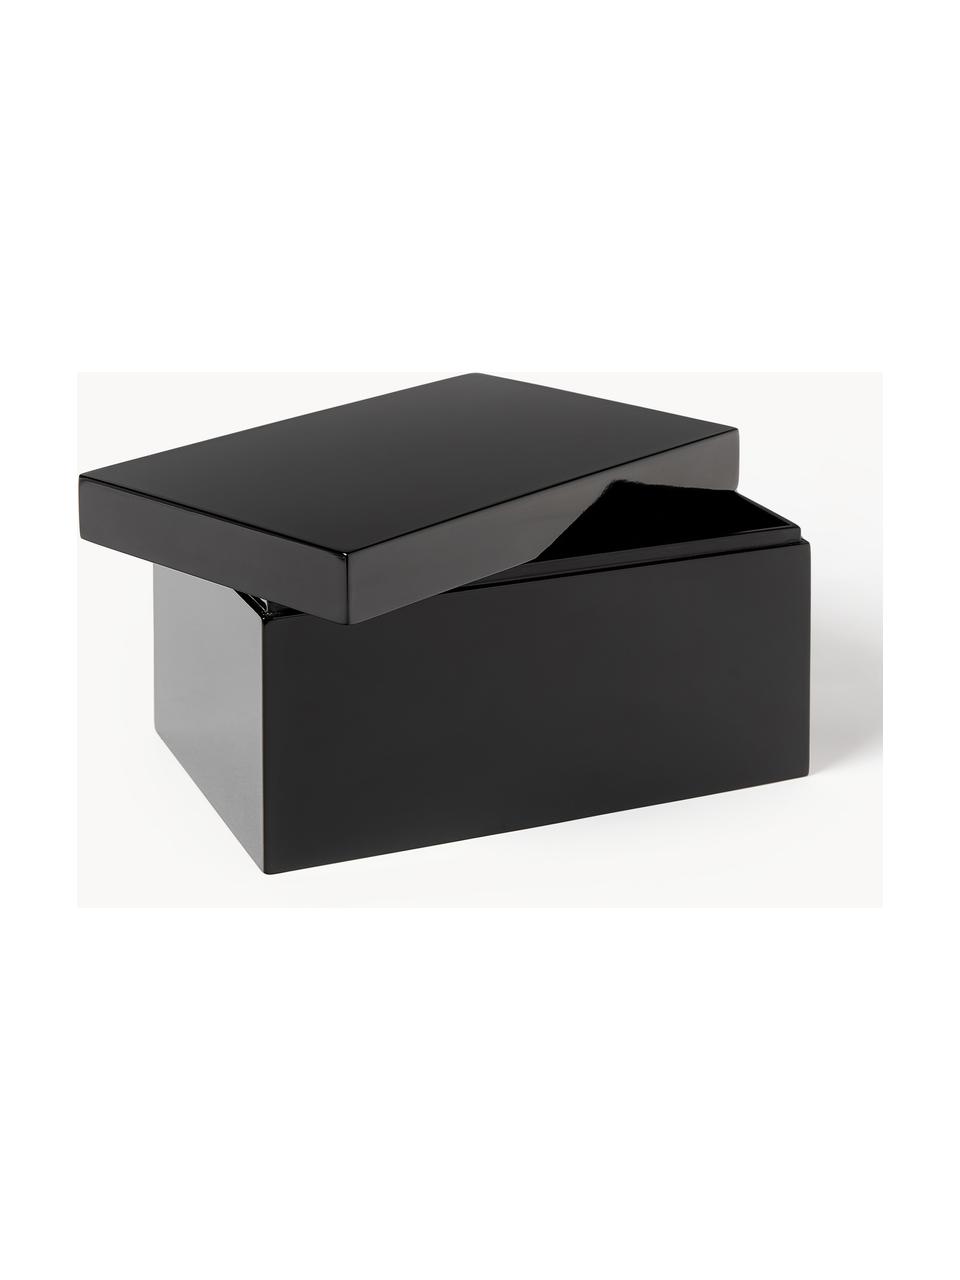 Sada úložných krabic Kylie, 2 díly, MDF deska (dřevovláknitá deska střední hustoty), Černá, tlumeně bílá, Sada s různými velikostmi